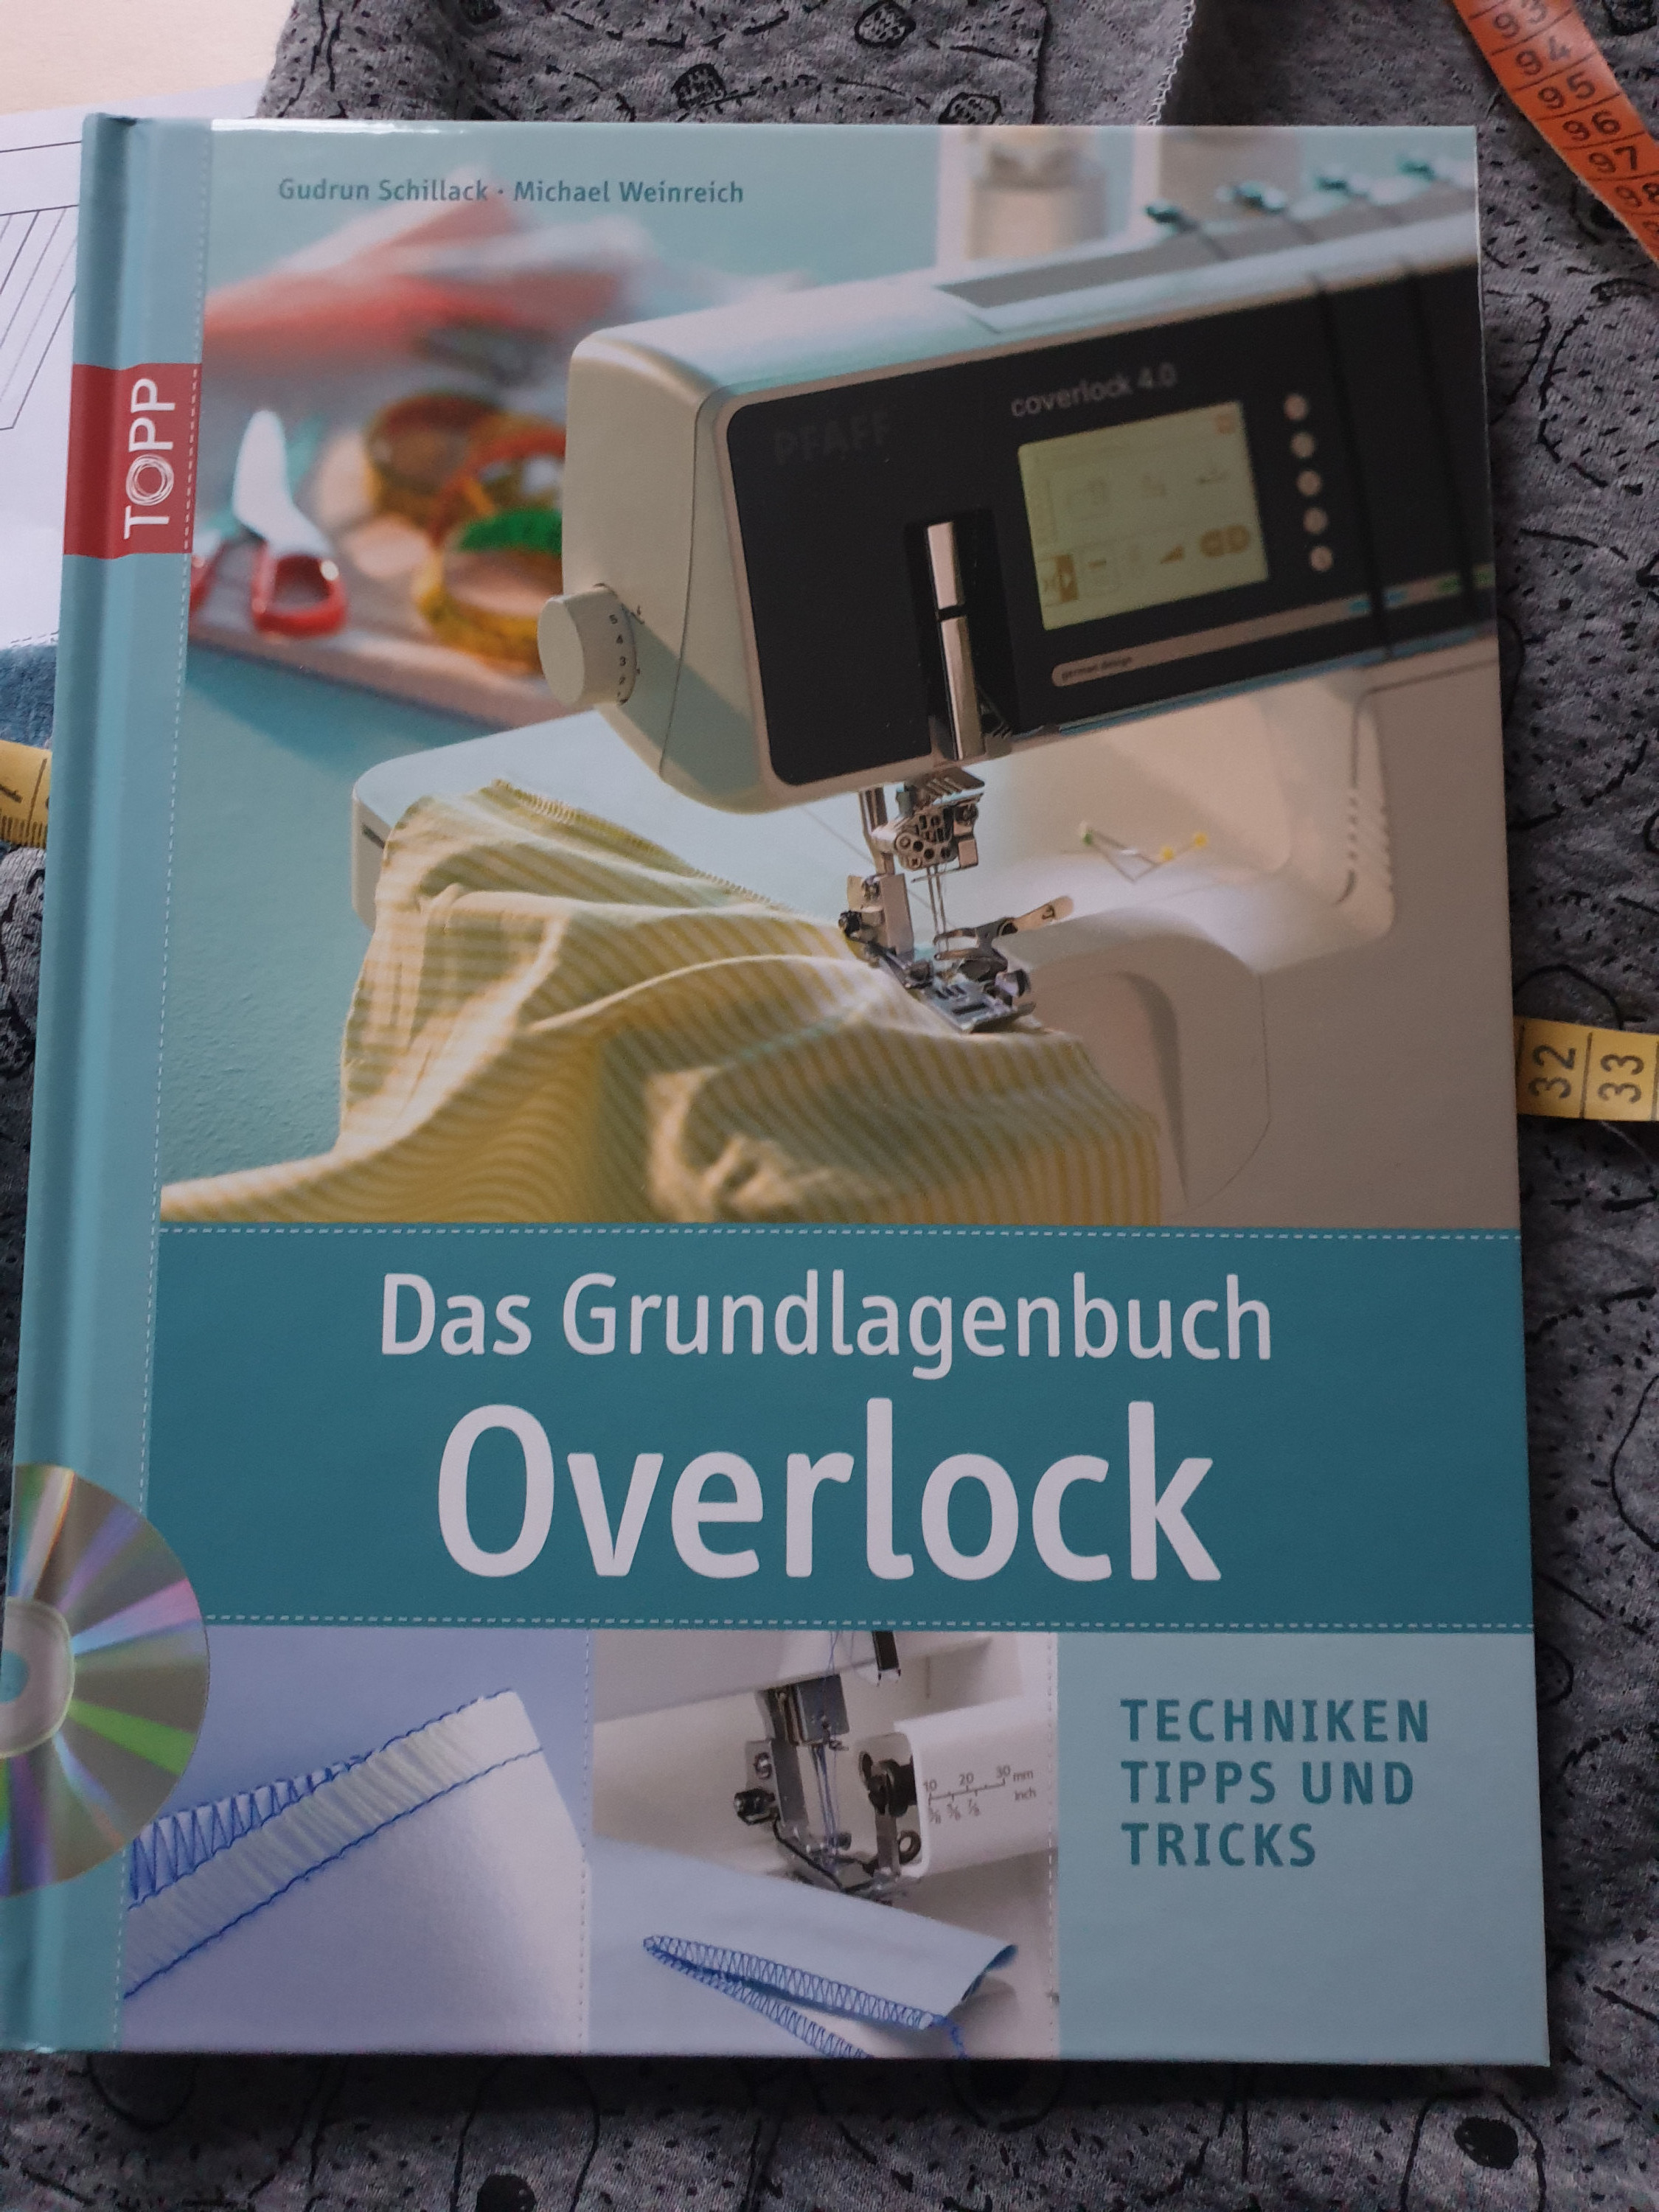 Overlock Grundlagenbuch